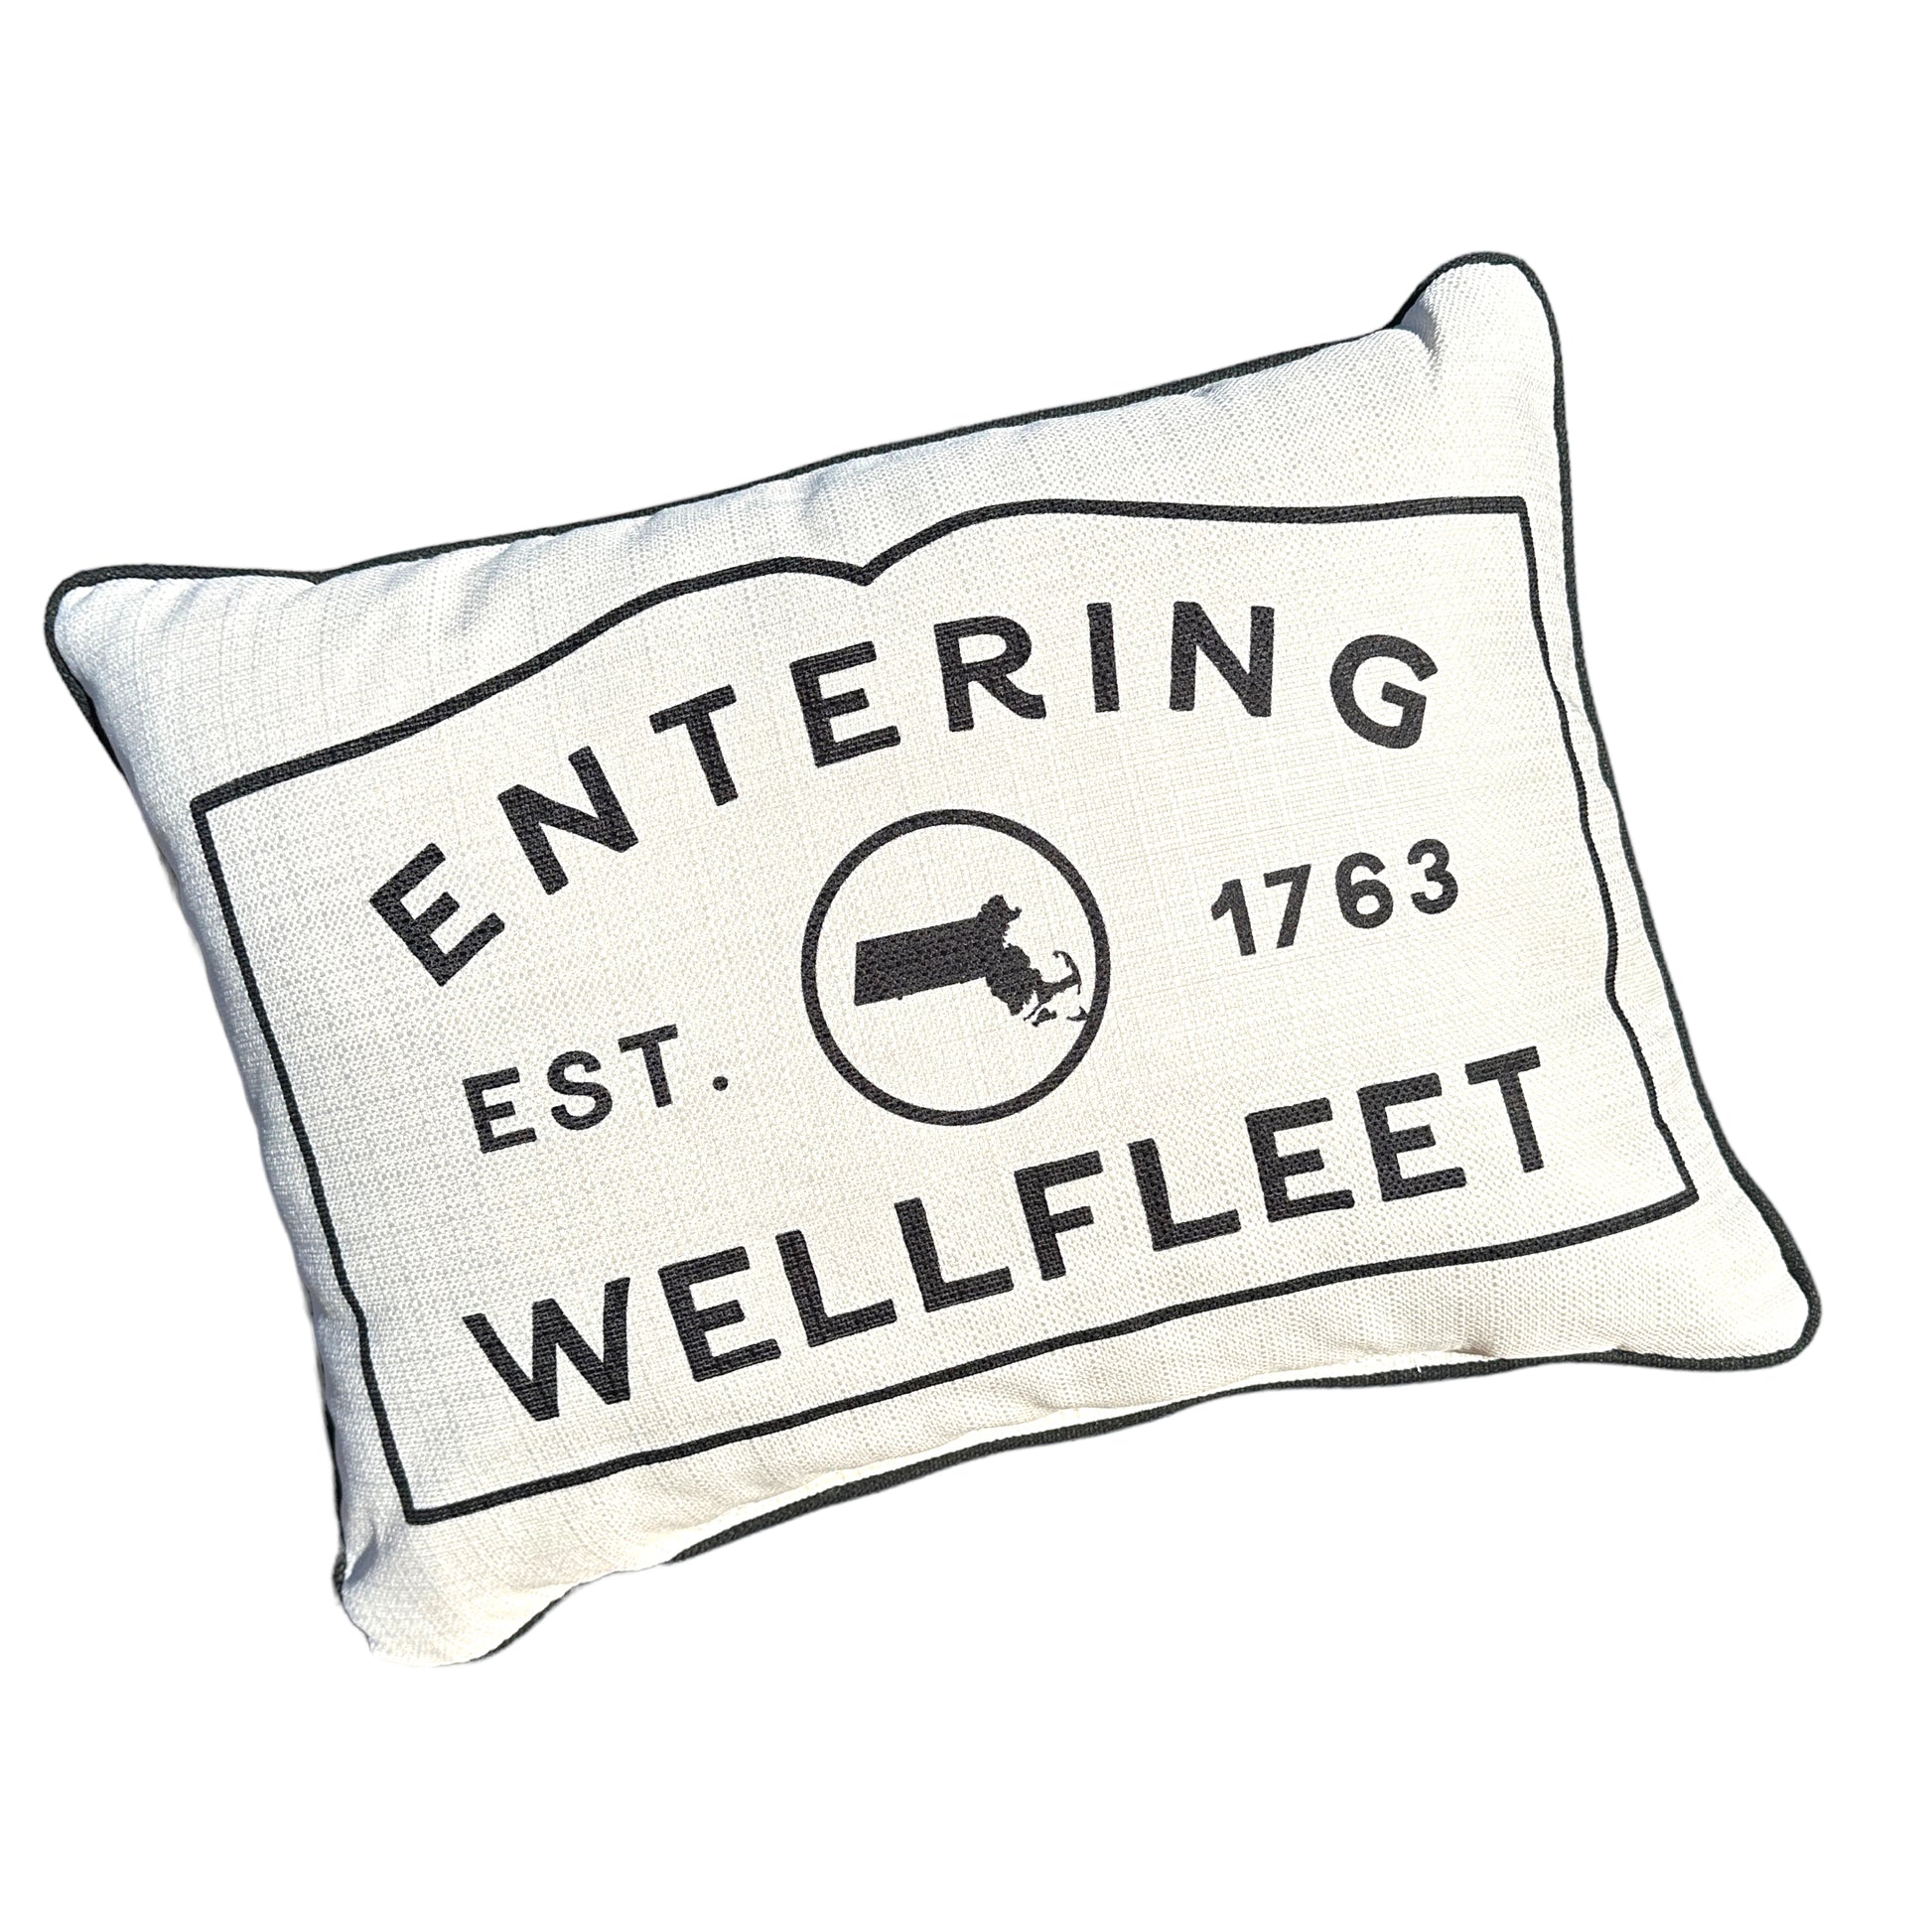 Wellfleet Massachusetts Town Sign Throw Pillow with Black Piping - 19-inch - Mellow Monkey